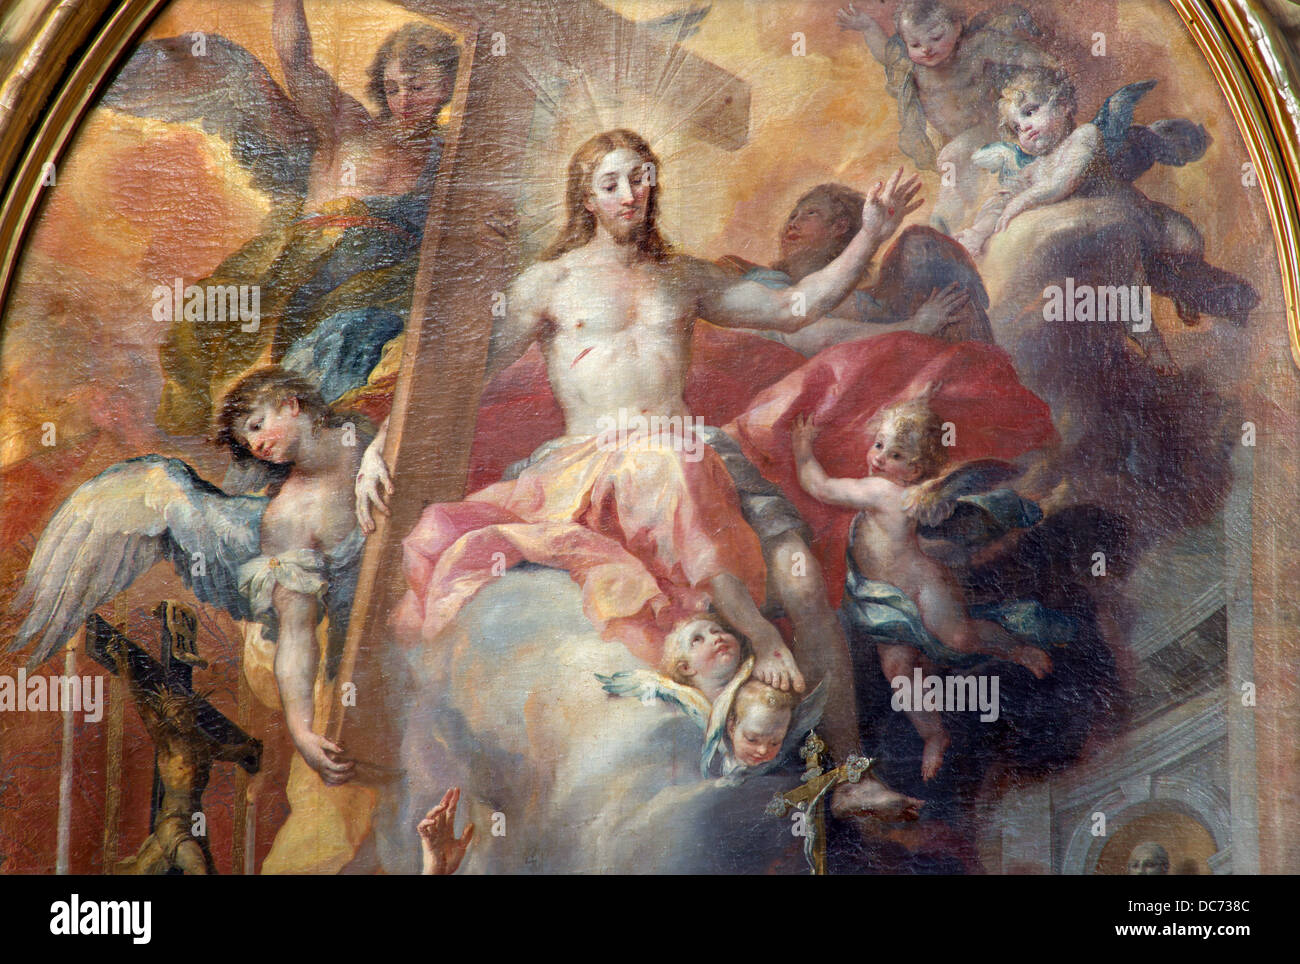 Vienne - 3 juillet : Détail de Jésus ressuscité dans le ciel sur l'autel latéral de baroque st. Peter church ou Peterskirche Banque D'Images